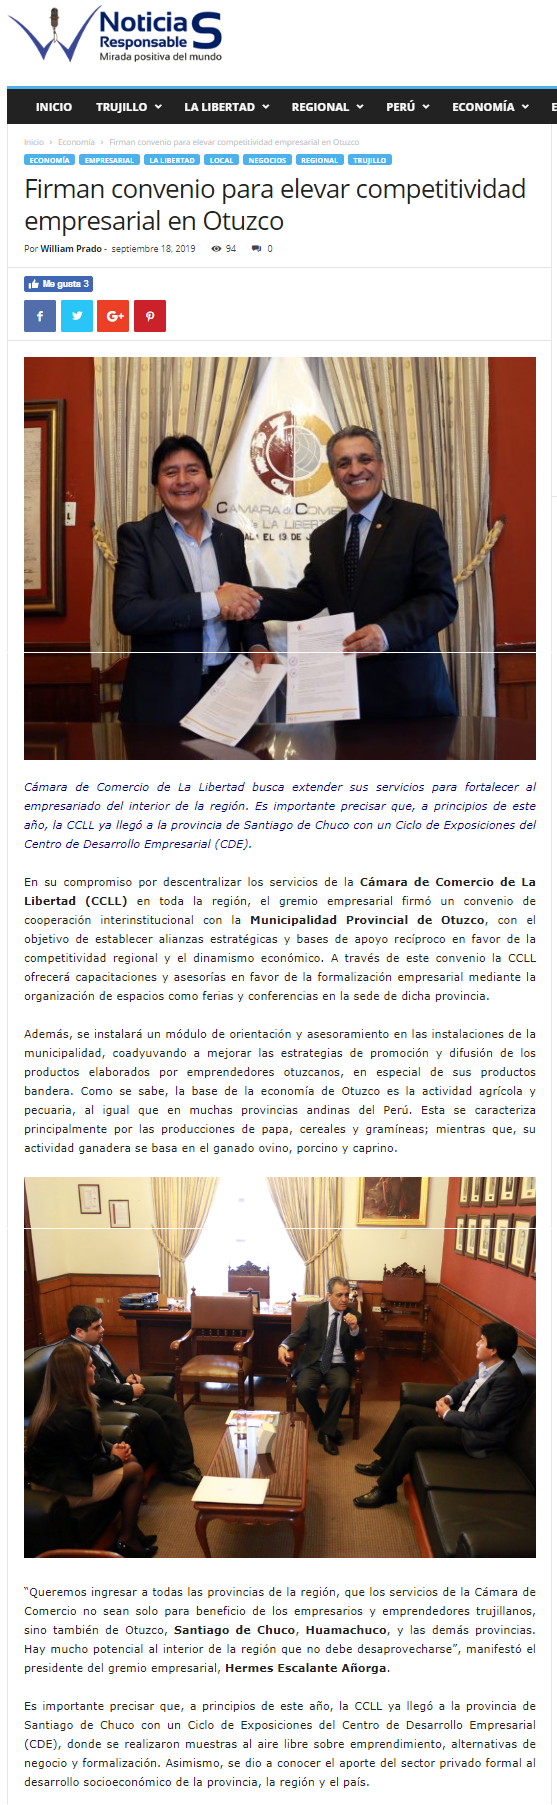 19.09.19.05 Noticias Responsables Firman convenio para elevar competitividad empresarial en Otuzco Cámara de Comercio de La Libertad CCLL